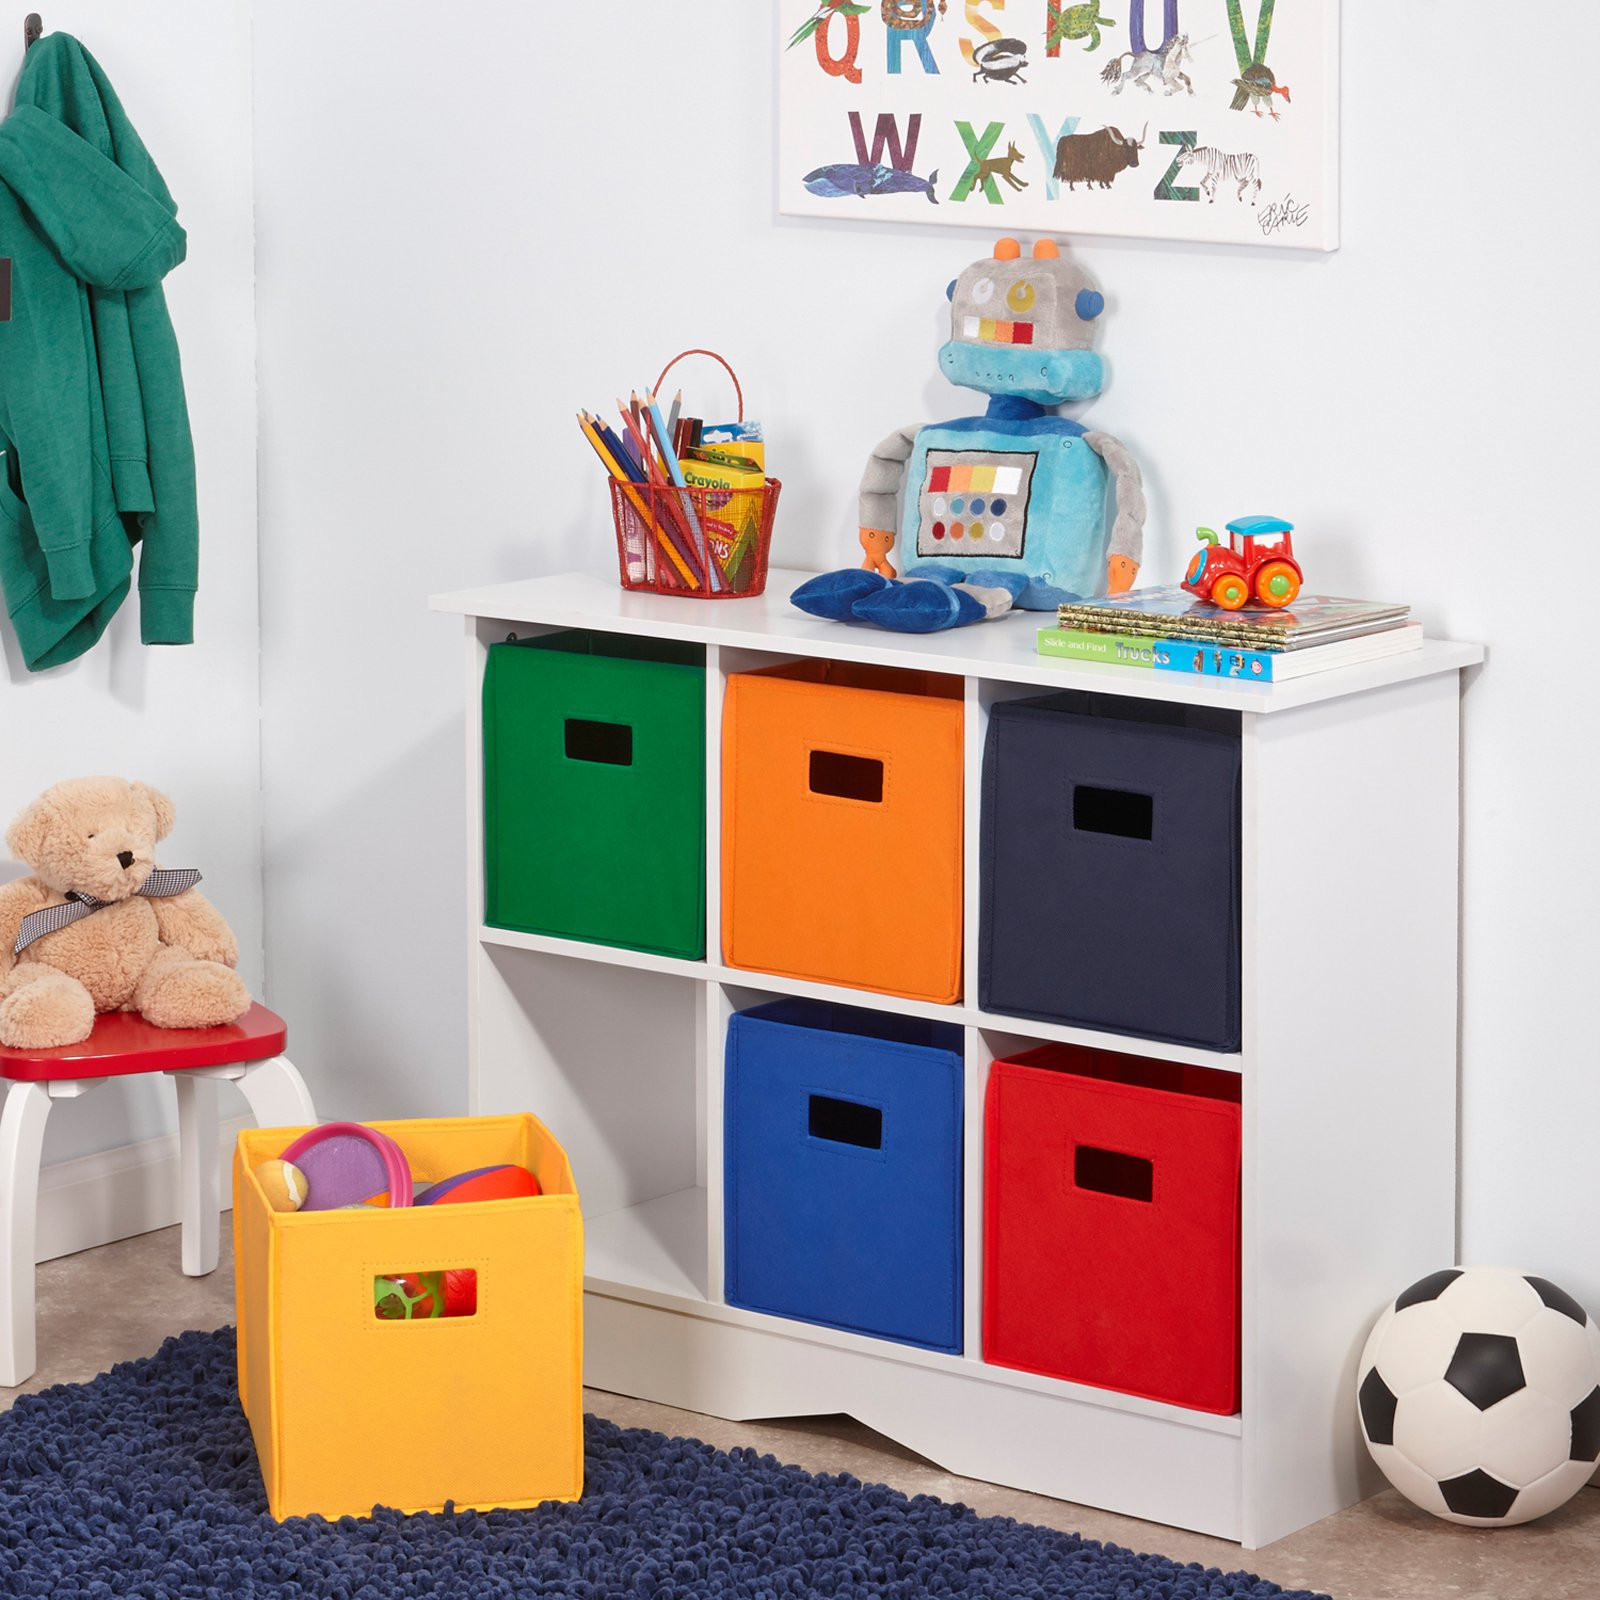 Child Storage Furniture
 RiverRidge Kids White Cabinet with 6 Bins Toy Storage at